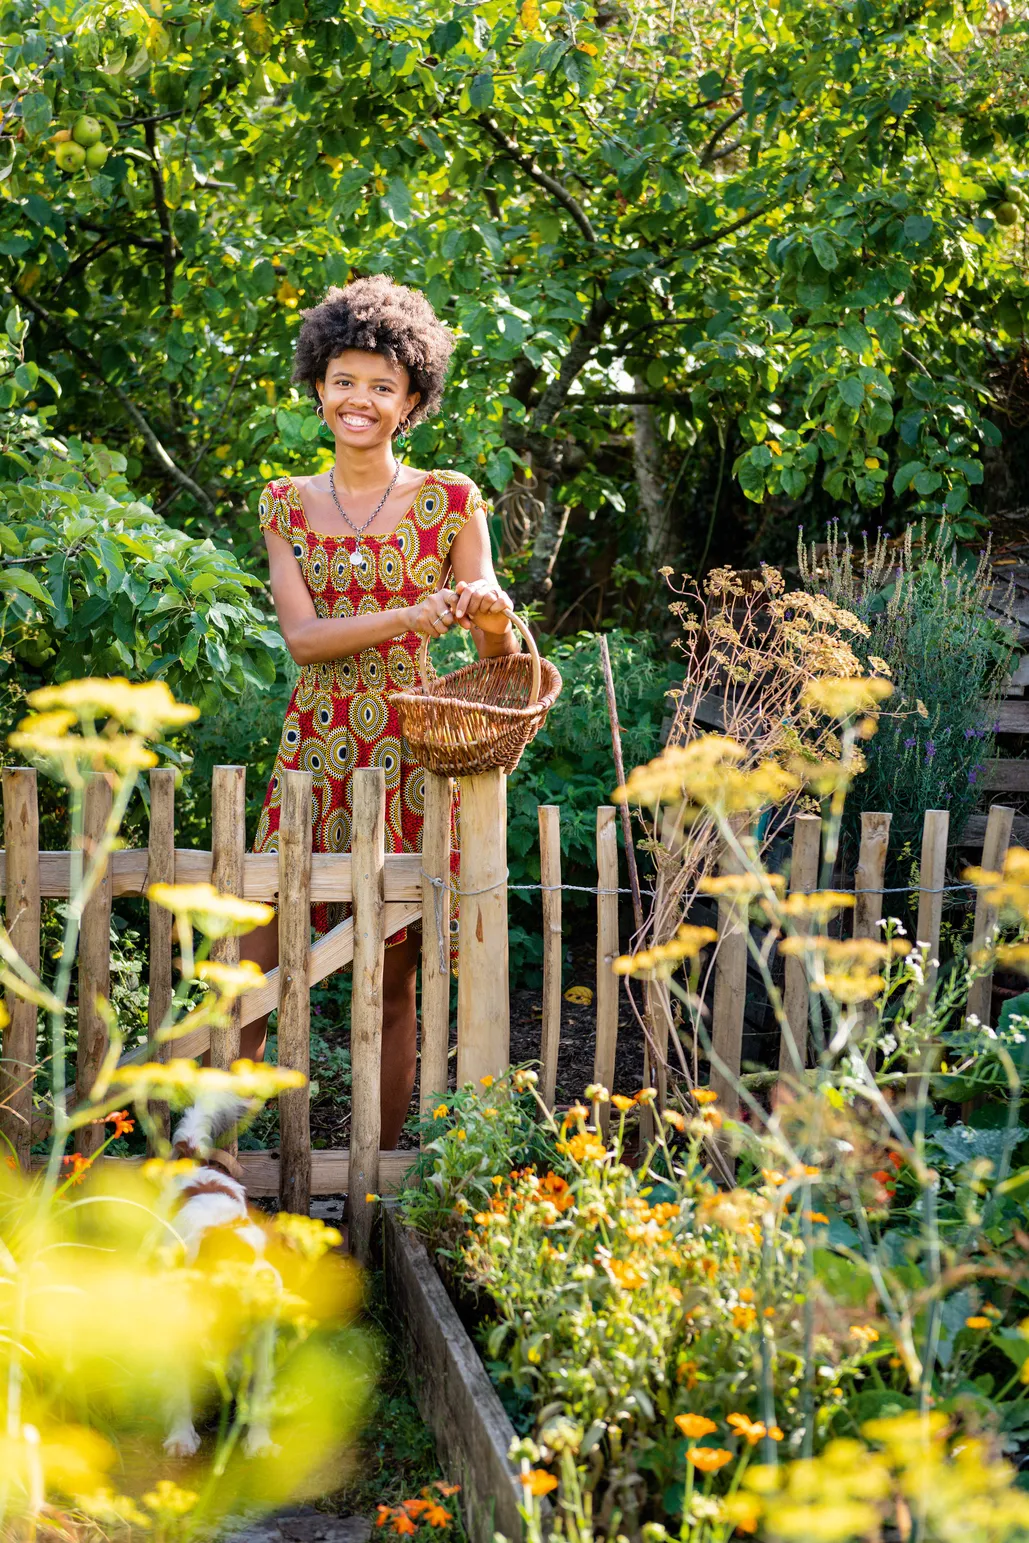 Poppy Okotcha Our Gardens May Be Small